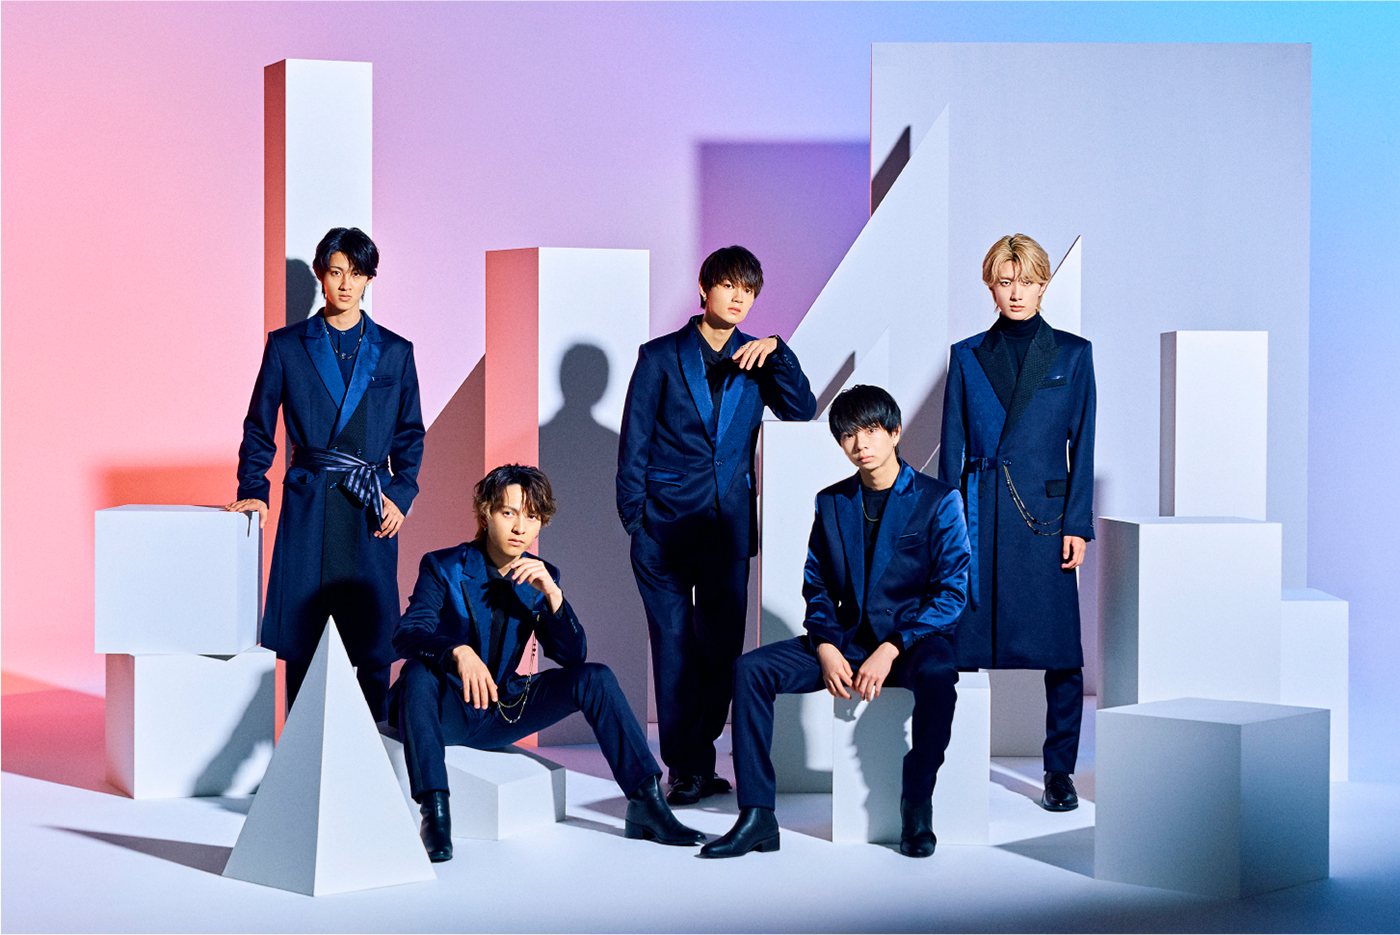 M!LK メジャーデビュー 豪華客船ライブ Blu-ray-